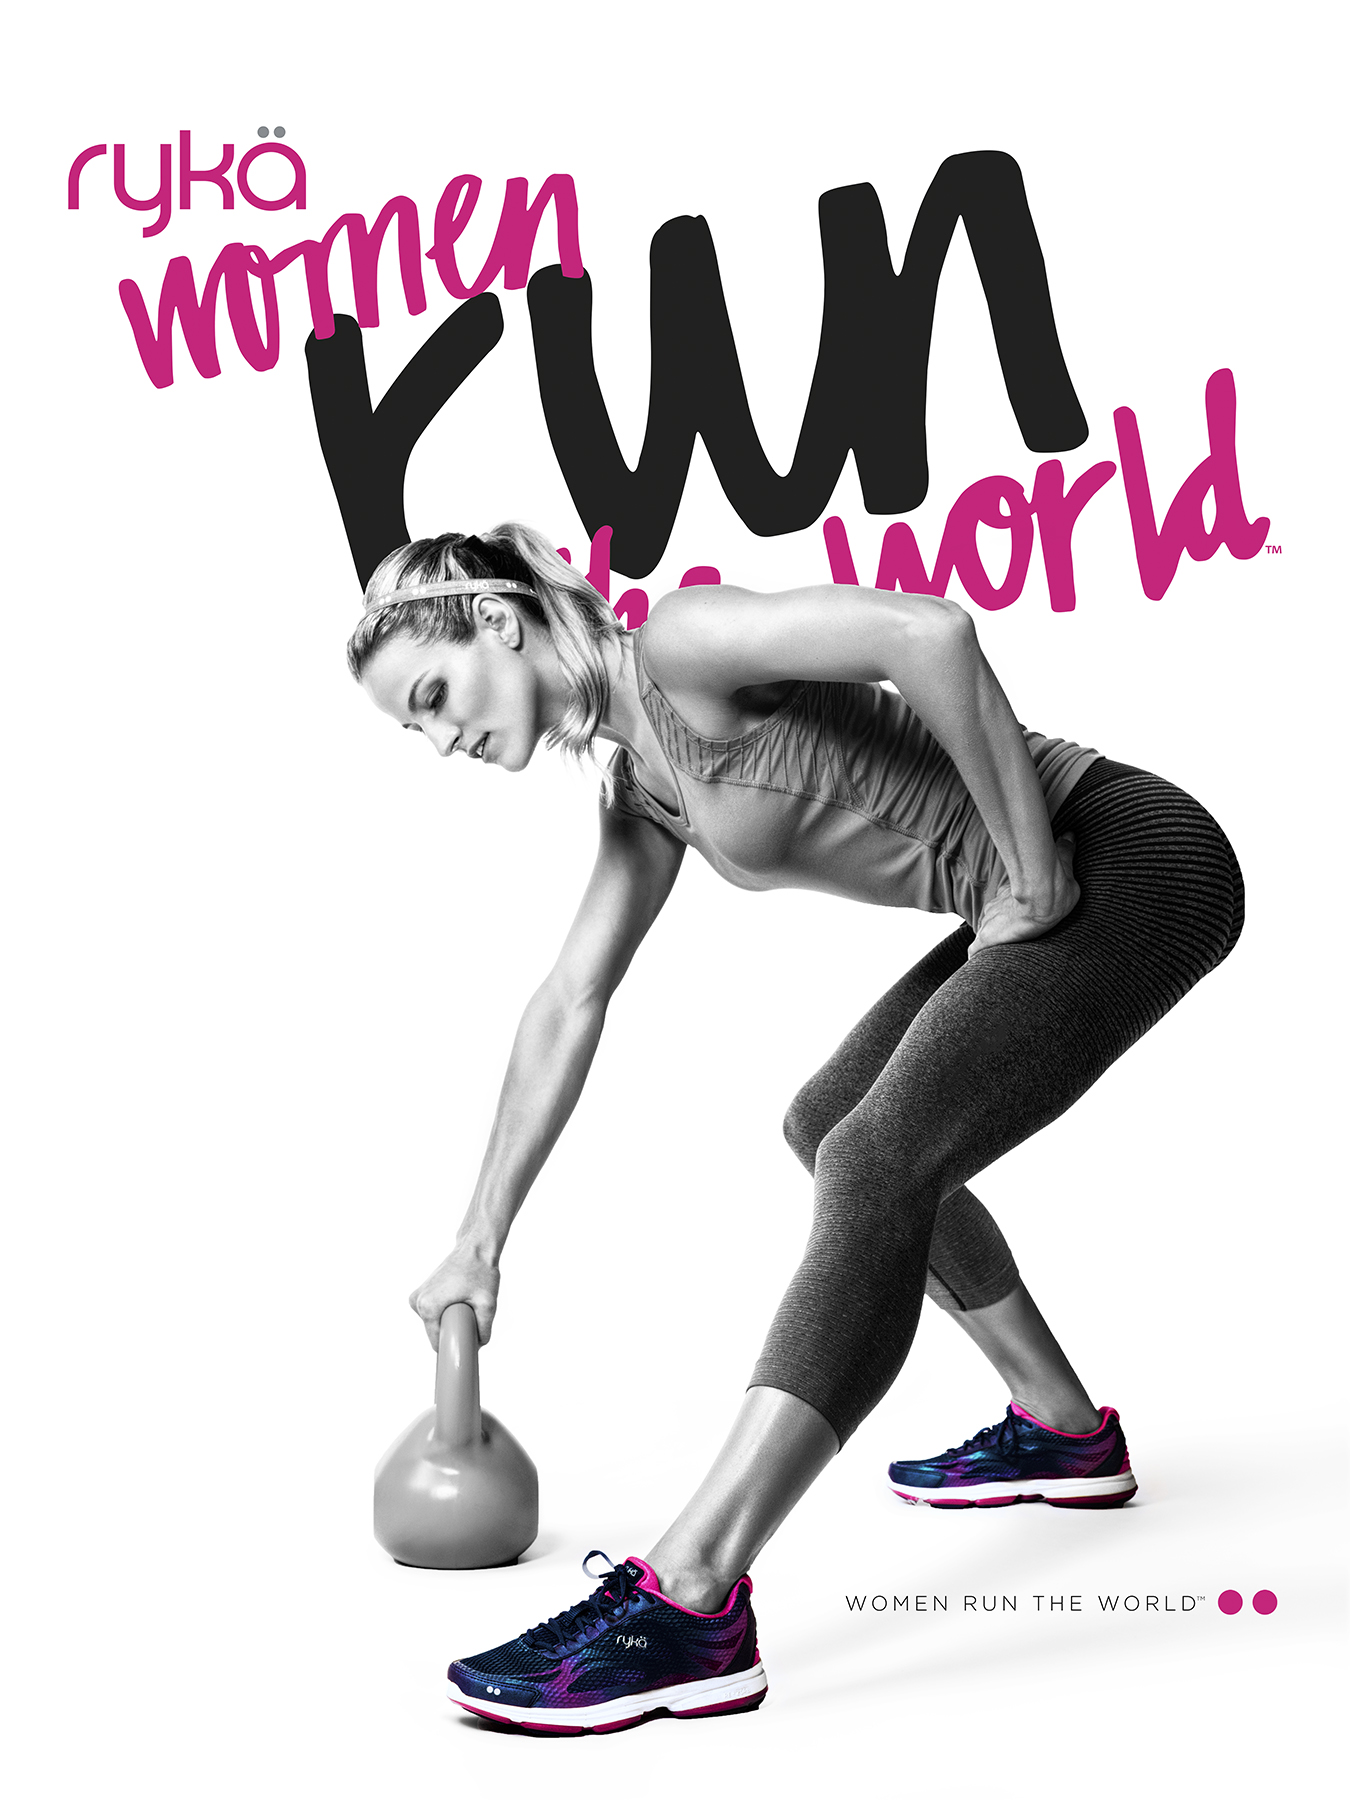 Rÿka "Women Run the World" Campaign